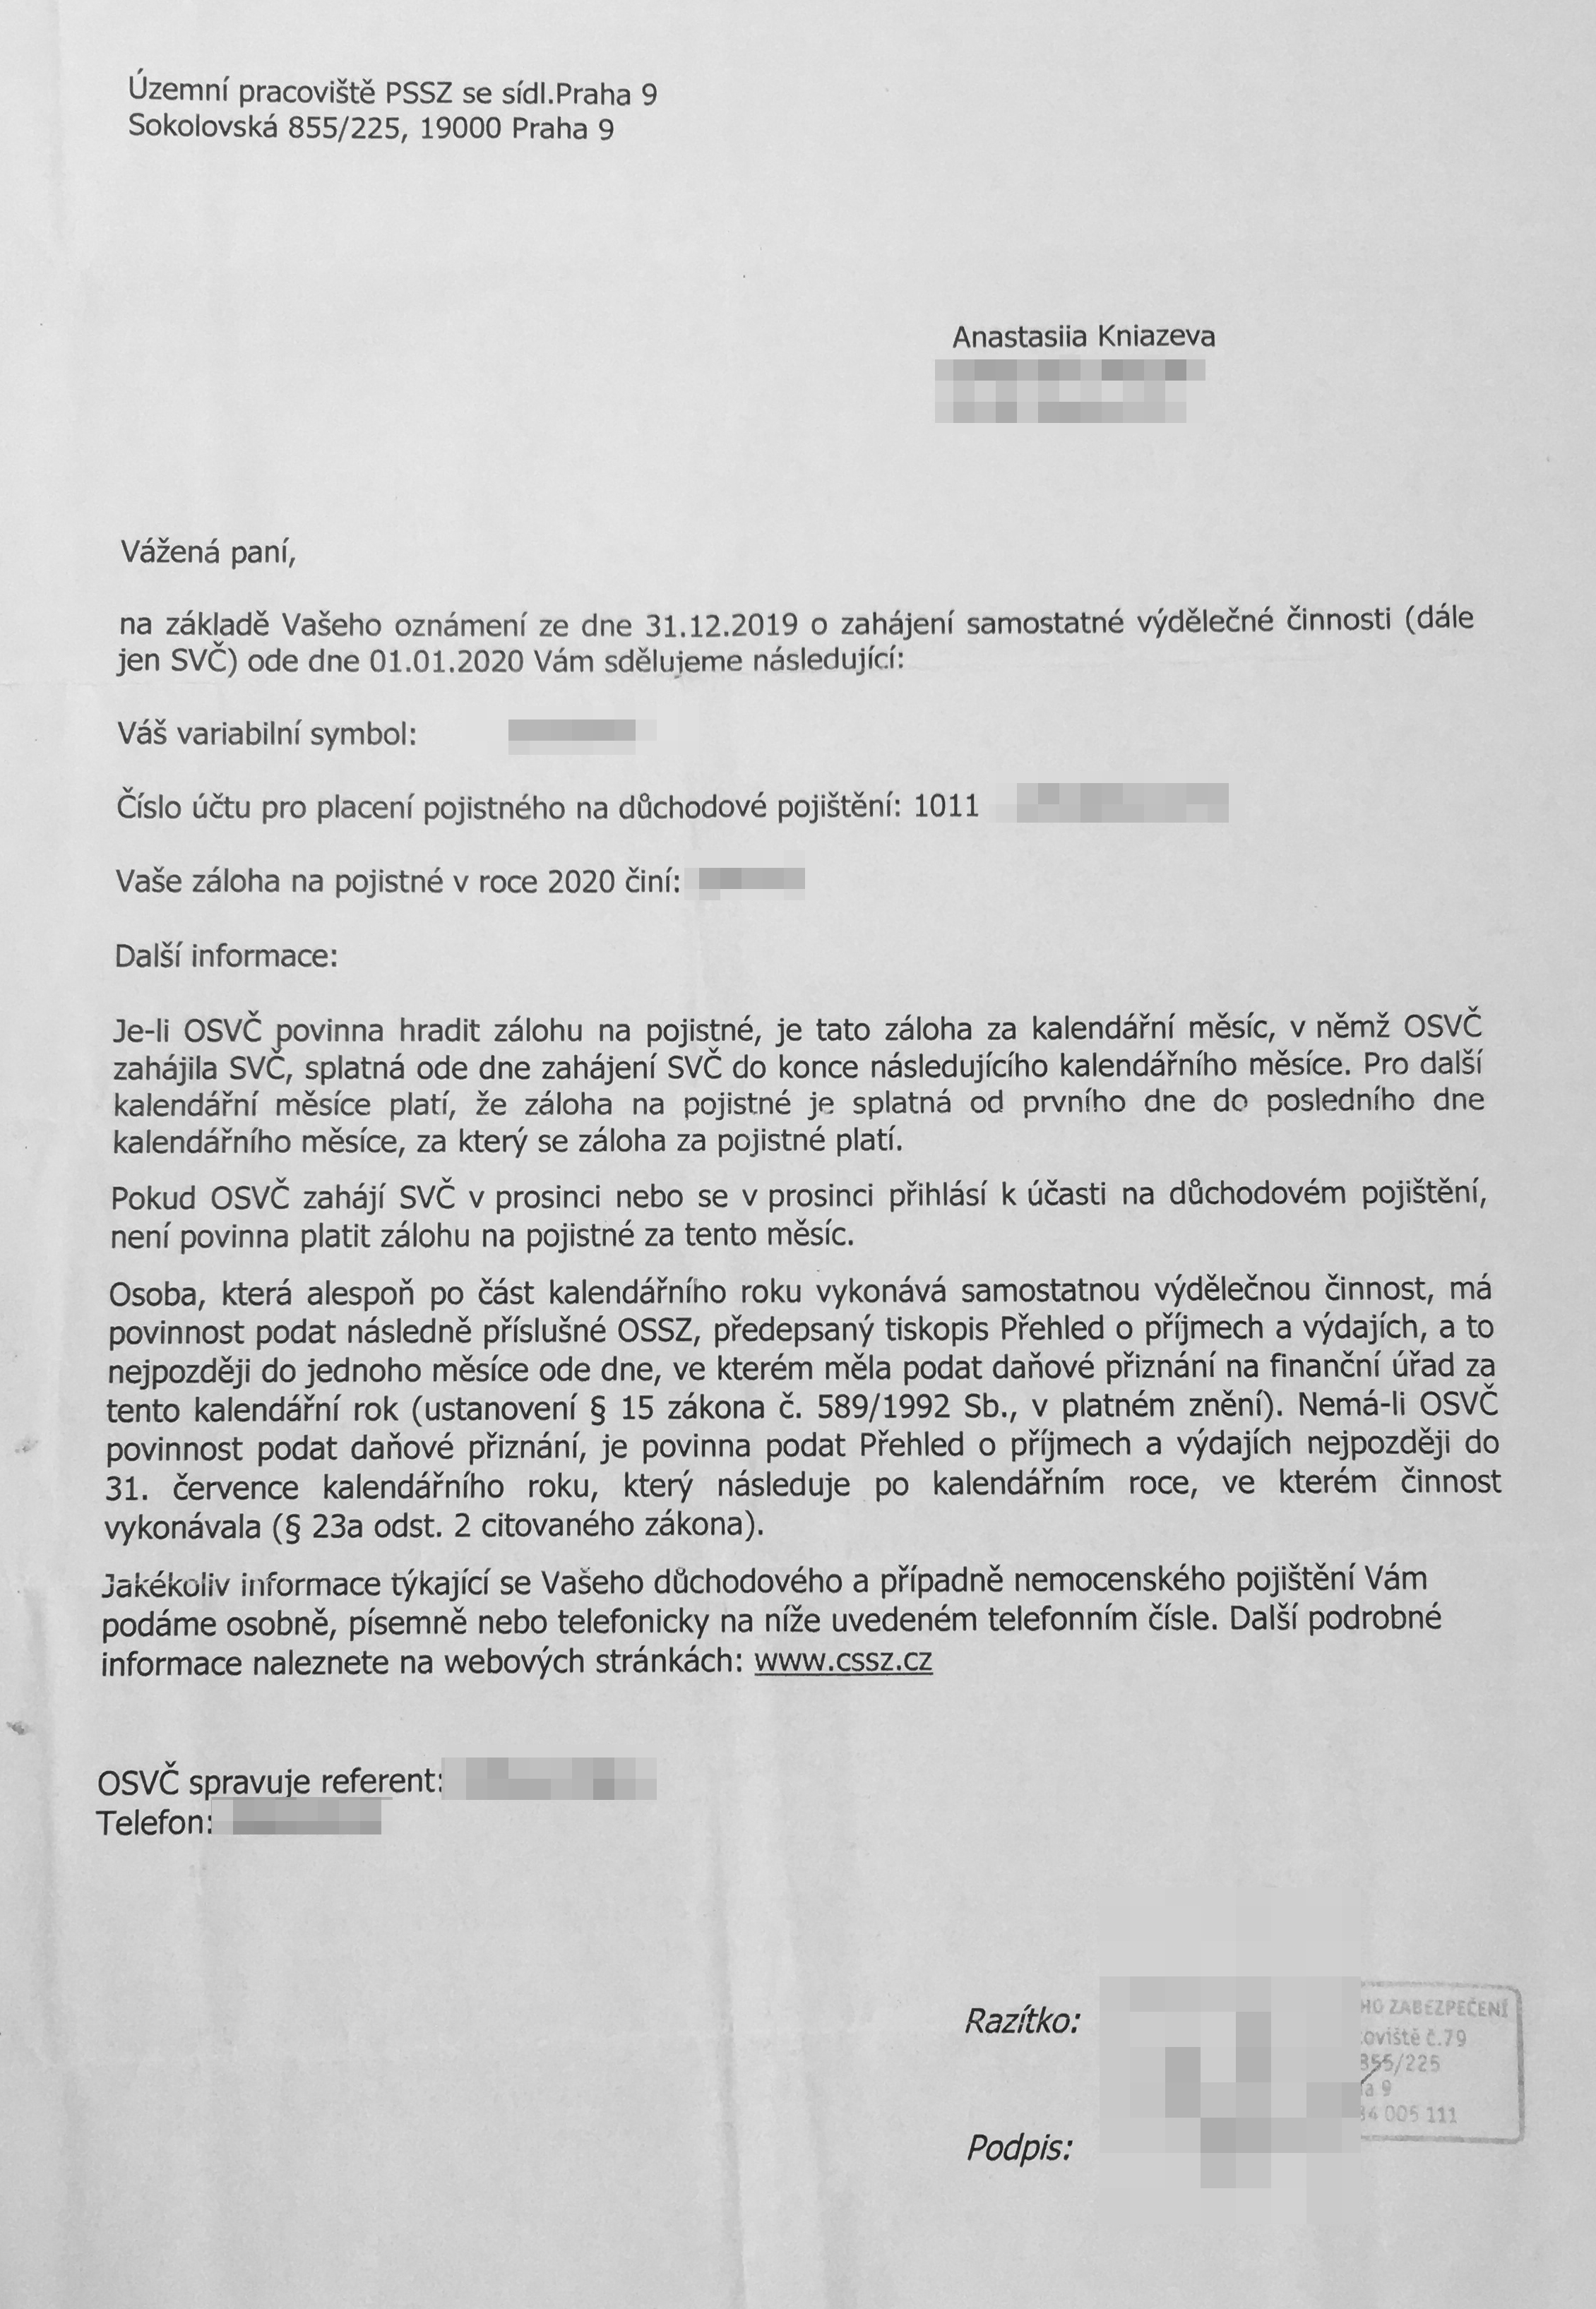 Письмо Департамента социального обеспечения с размером отчислений для социального страхования — 2544 Kč и номером счета, куда переводить деньги